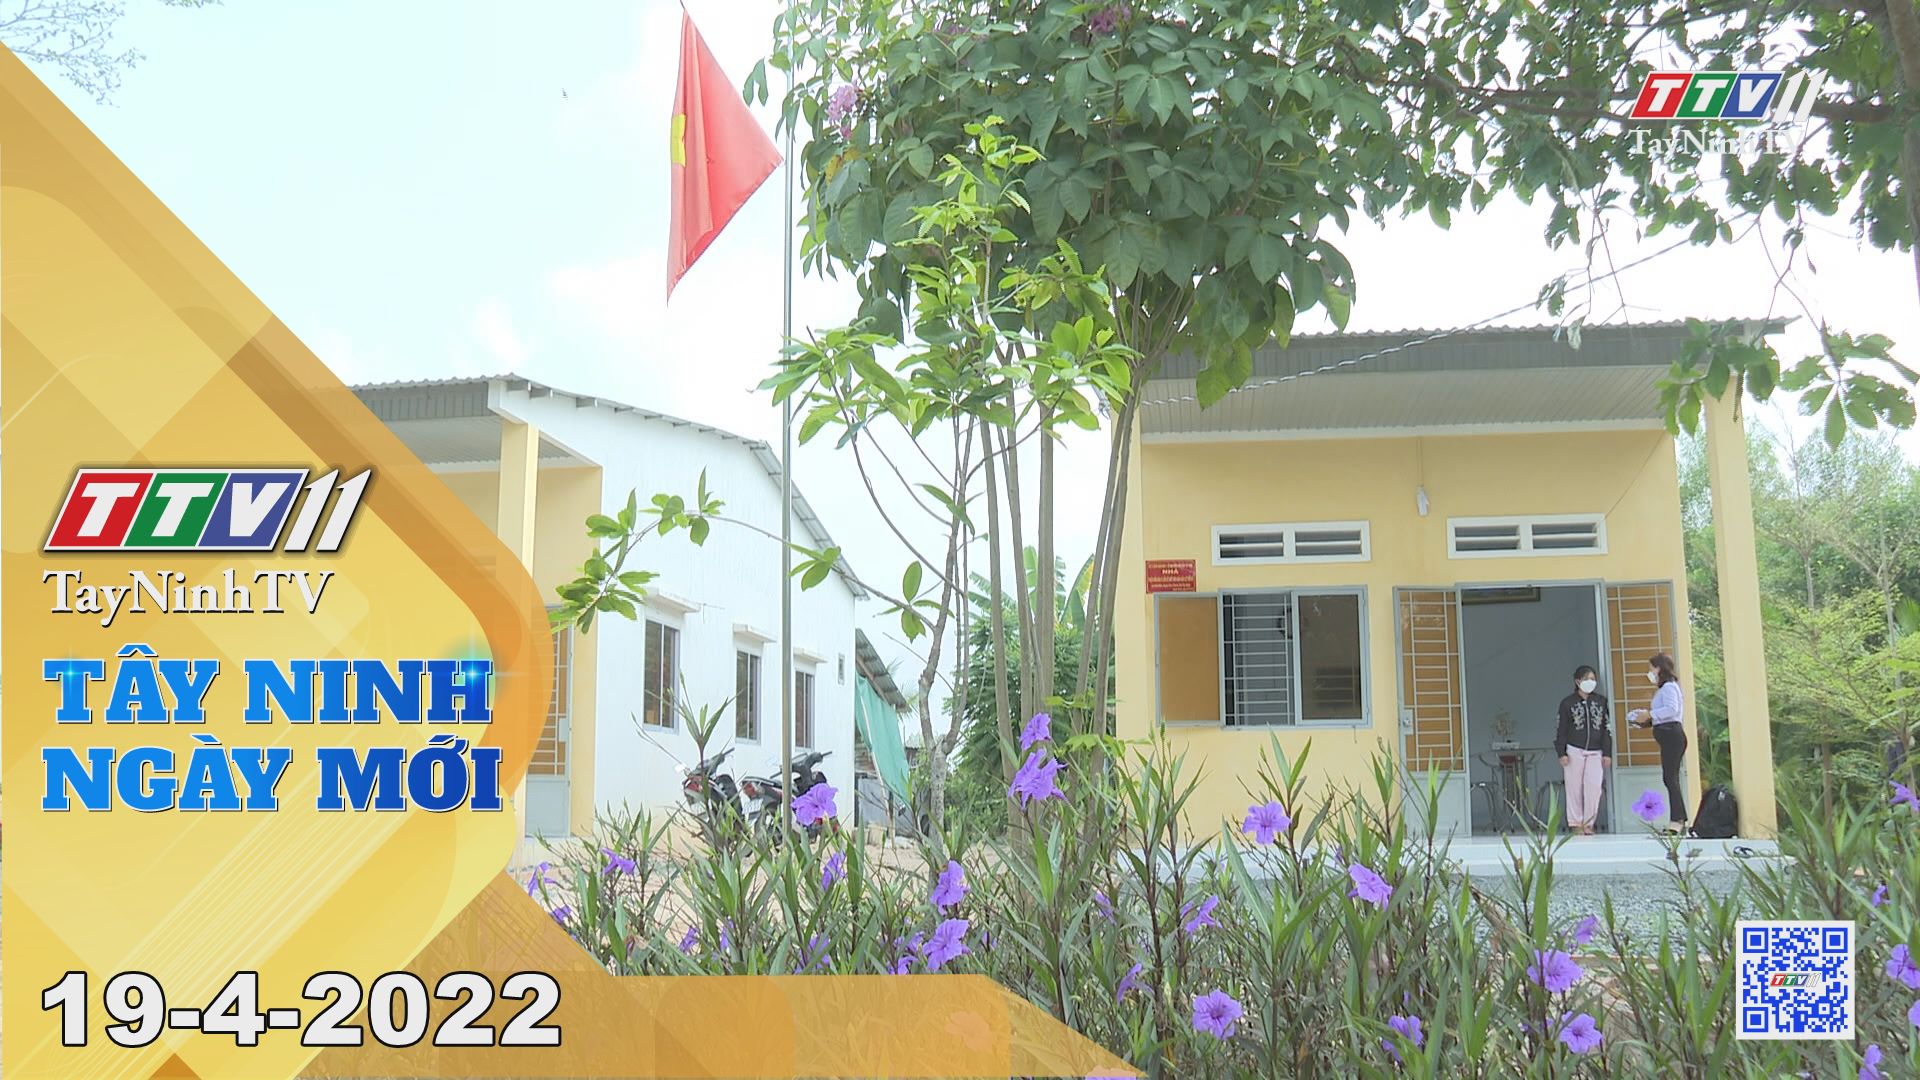 Tây Ninh ngày mới 19-4-2022| Tin tức hôm nay | TayNinhTV